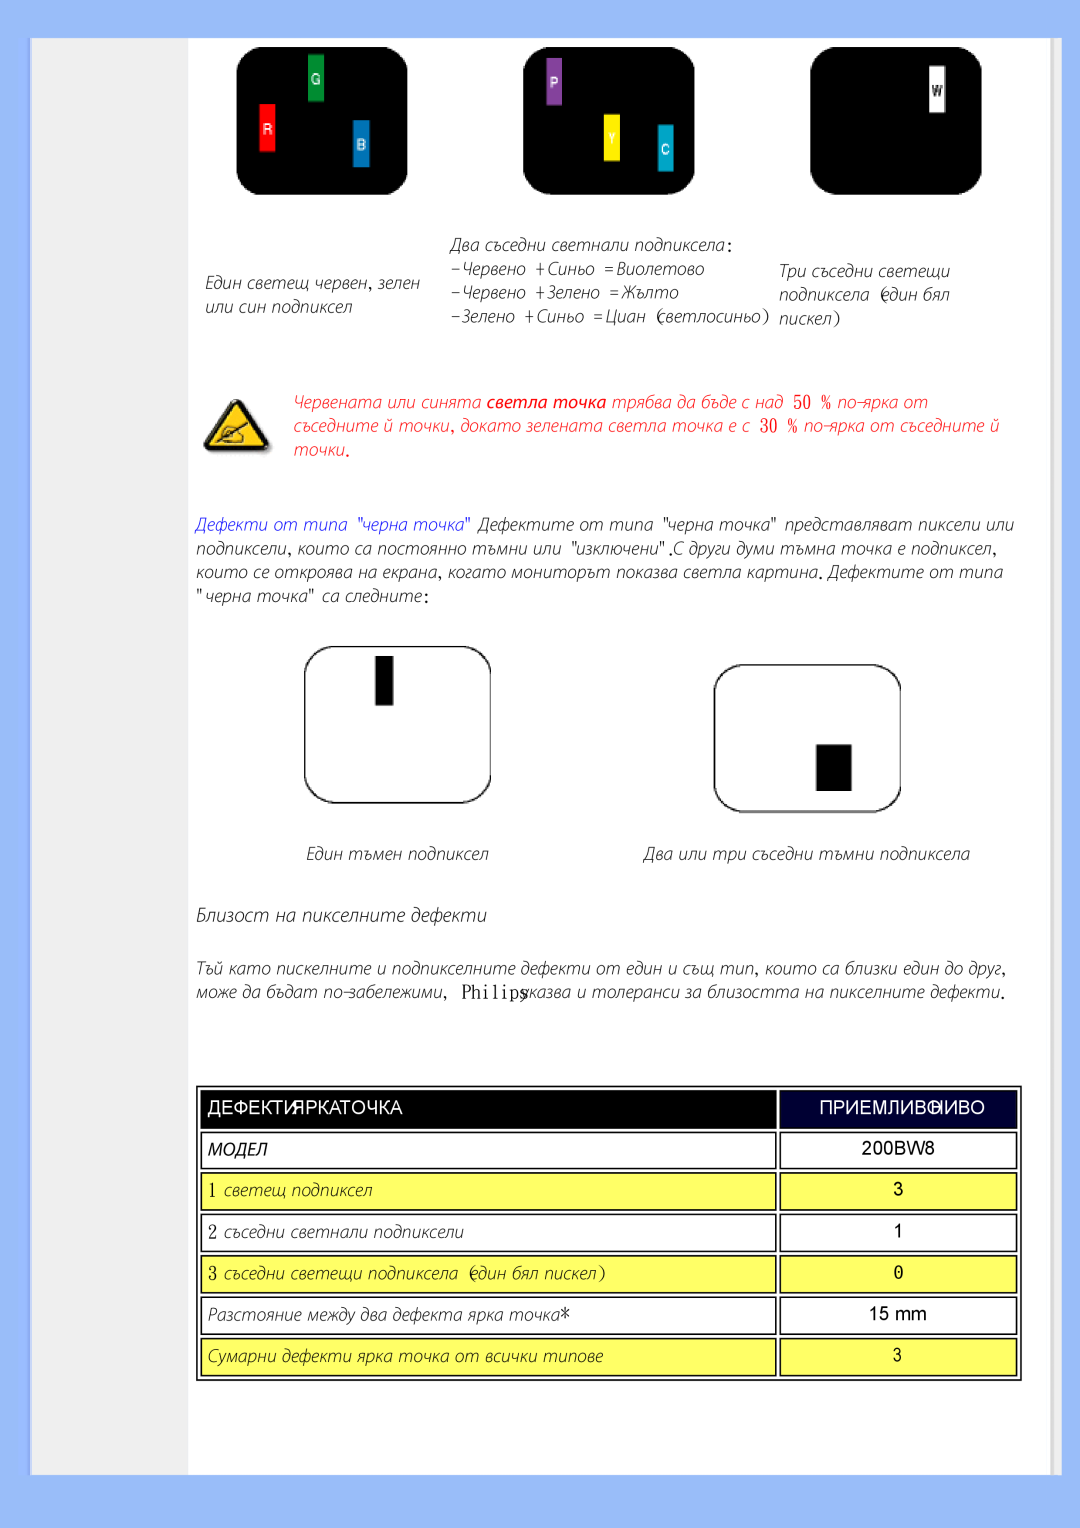 Philips 200BW8 user manual Близост на пикселните дефекти, Дефектияркаточка 